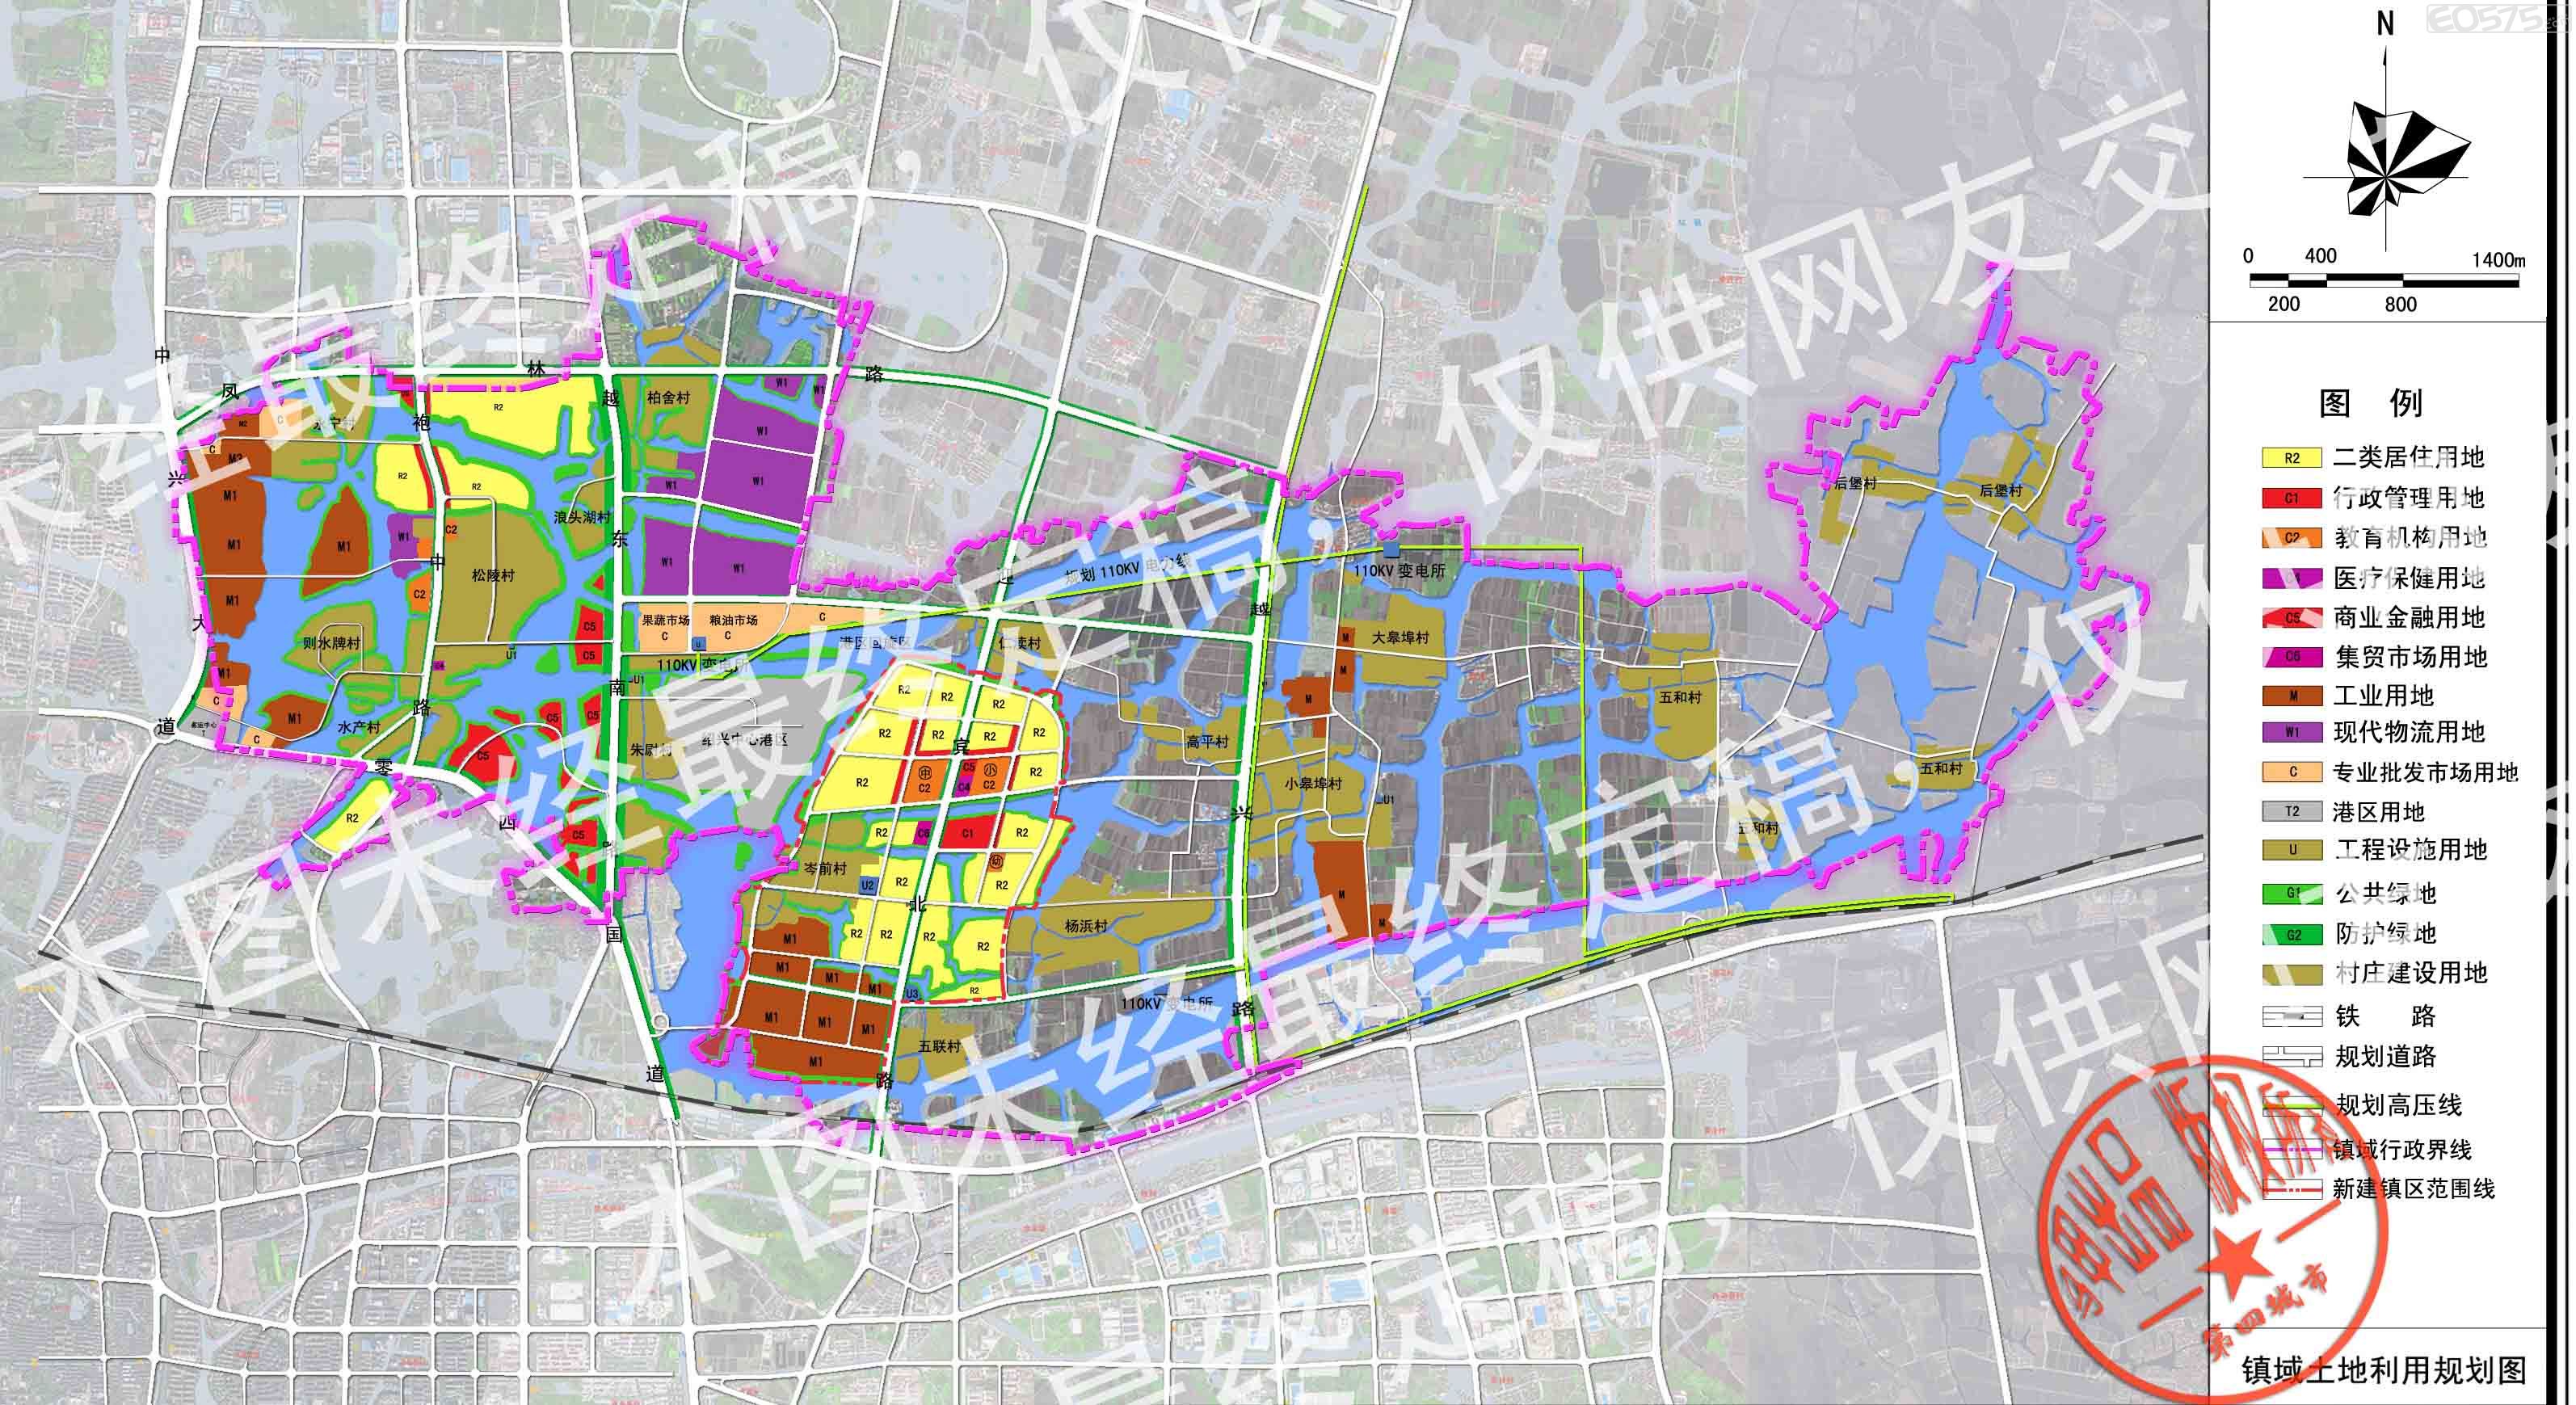 东湖镇总体规划纲要[2008-2025]|第四城市城建 - e